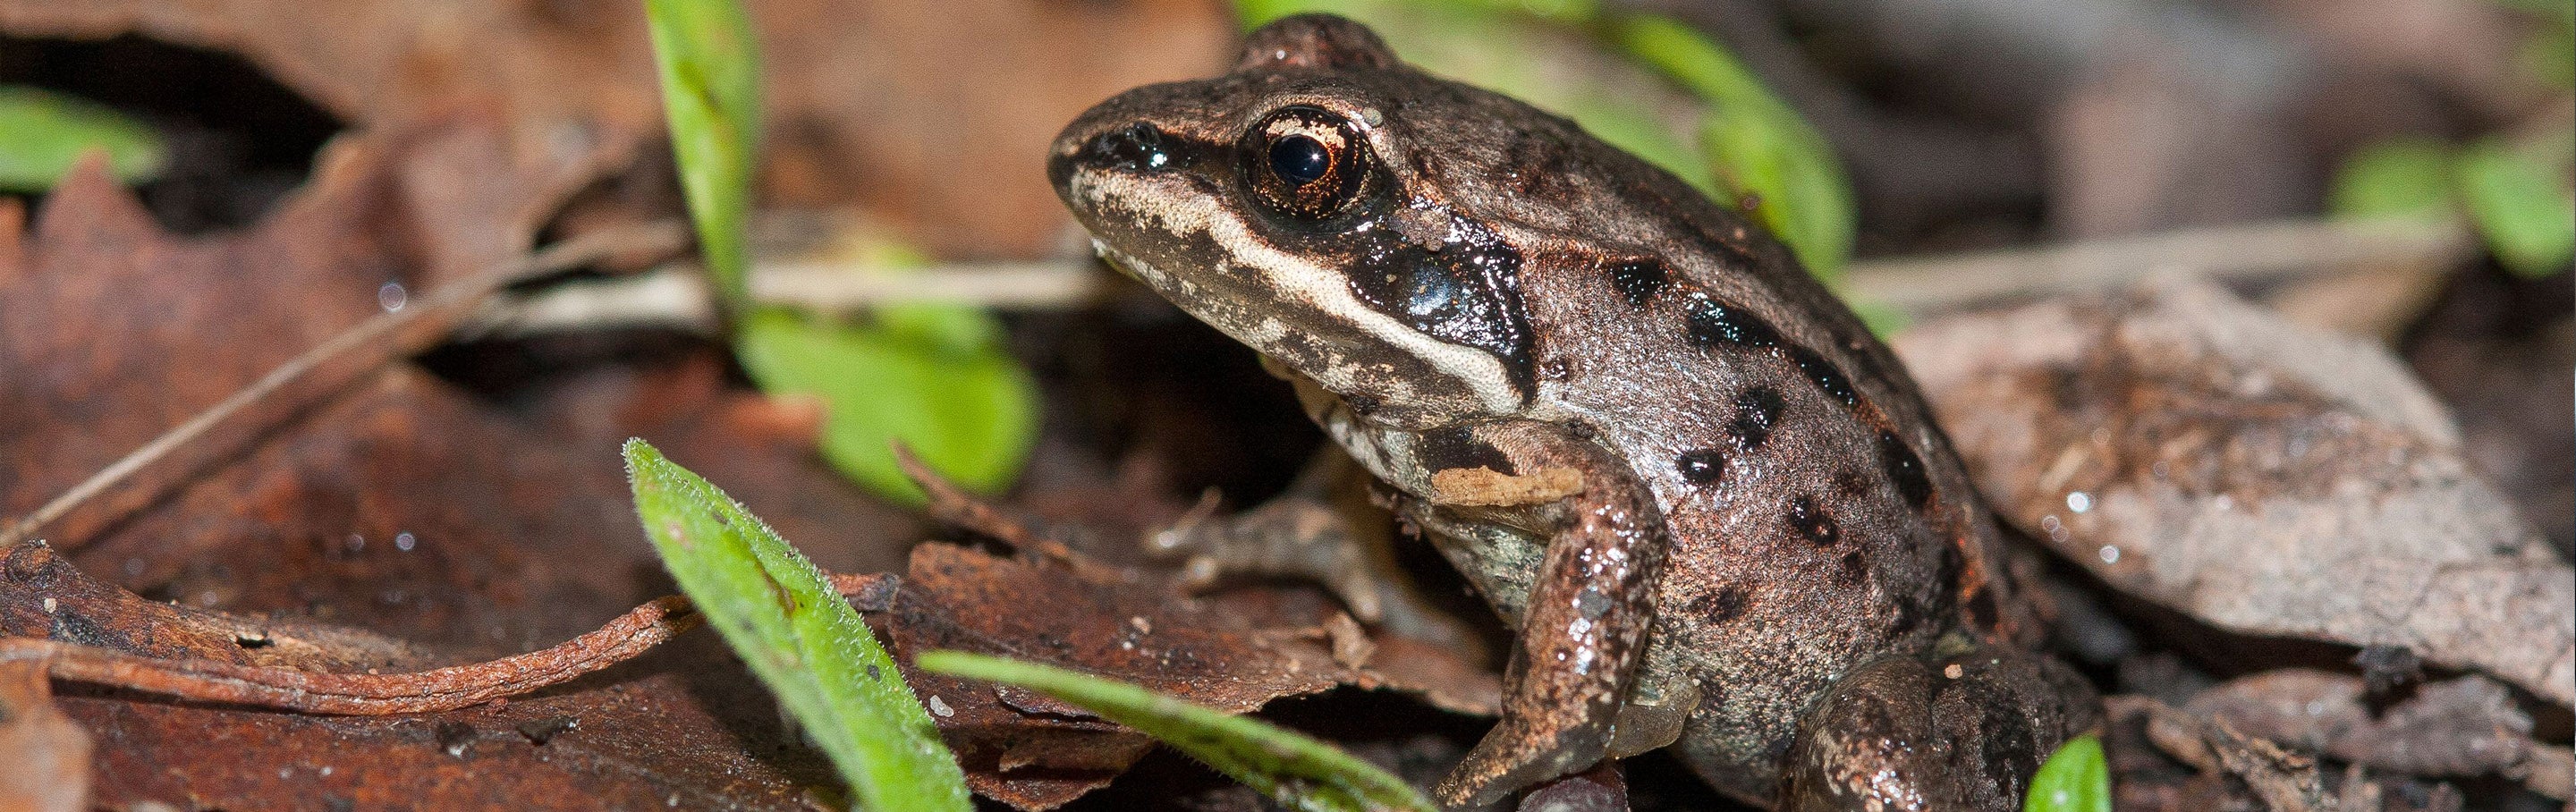 Wood Frog - Georgia Aquarium